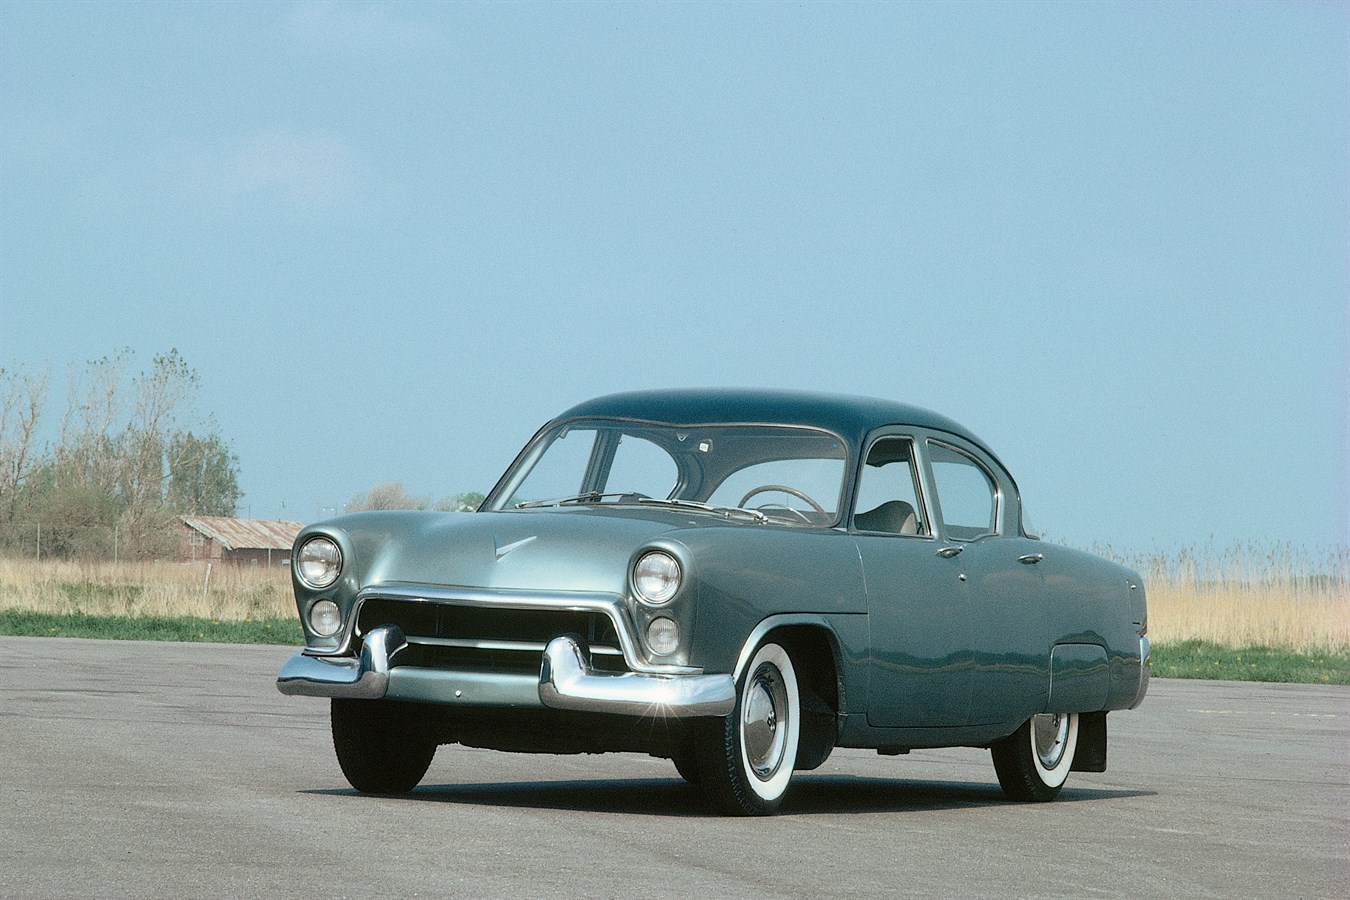 Modello Philip del 1952. Con le esportazioni negli USA all'orizzonte, questo prototipo fu progettato per avere un aspetto più simile a quello delle vetture americane dell'epoca. Esso era più grande del modello PV444, ed era dotato di un motore V8 e di modanature posteriori all'insù. Si trattava di un'innovazione elegante, ma nella circostanza Volvo era destinata a riuscire a